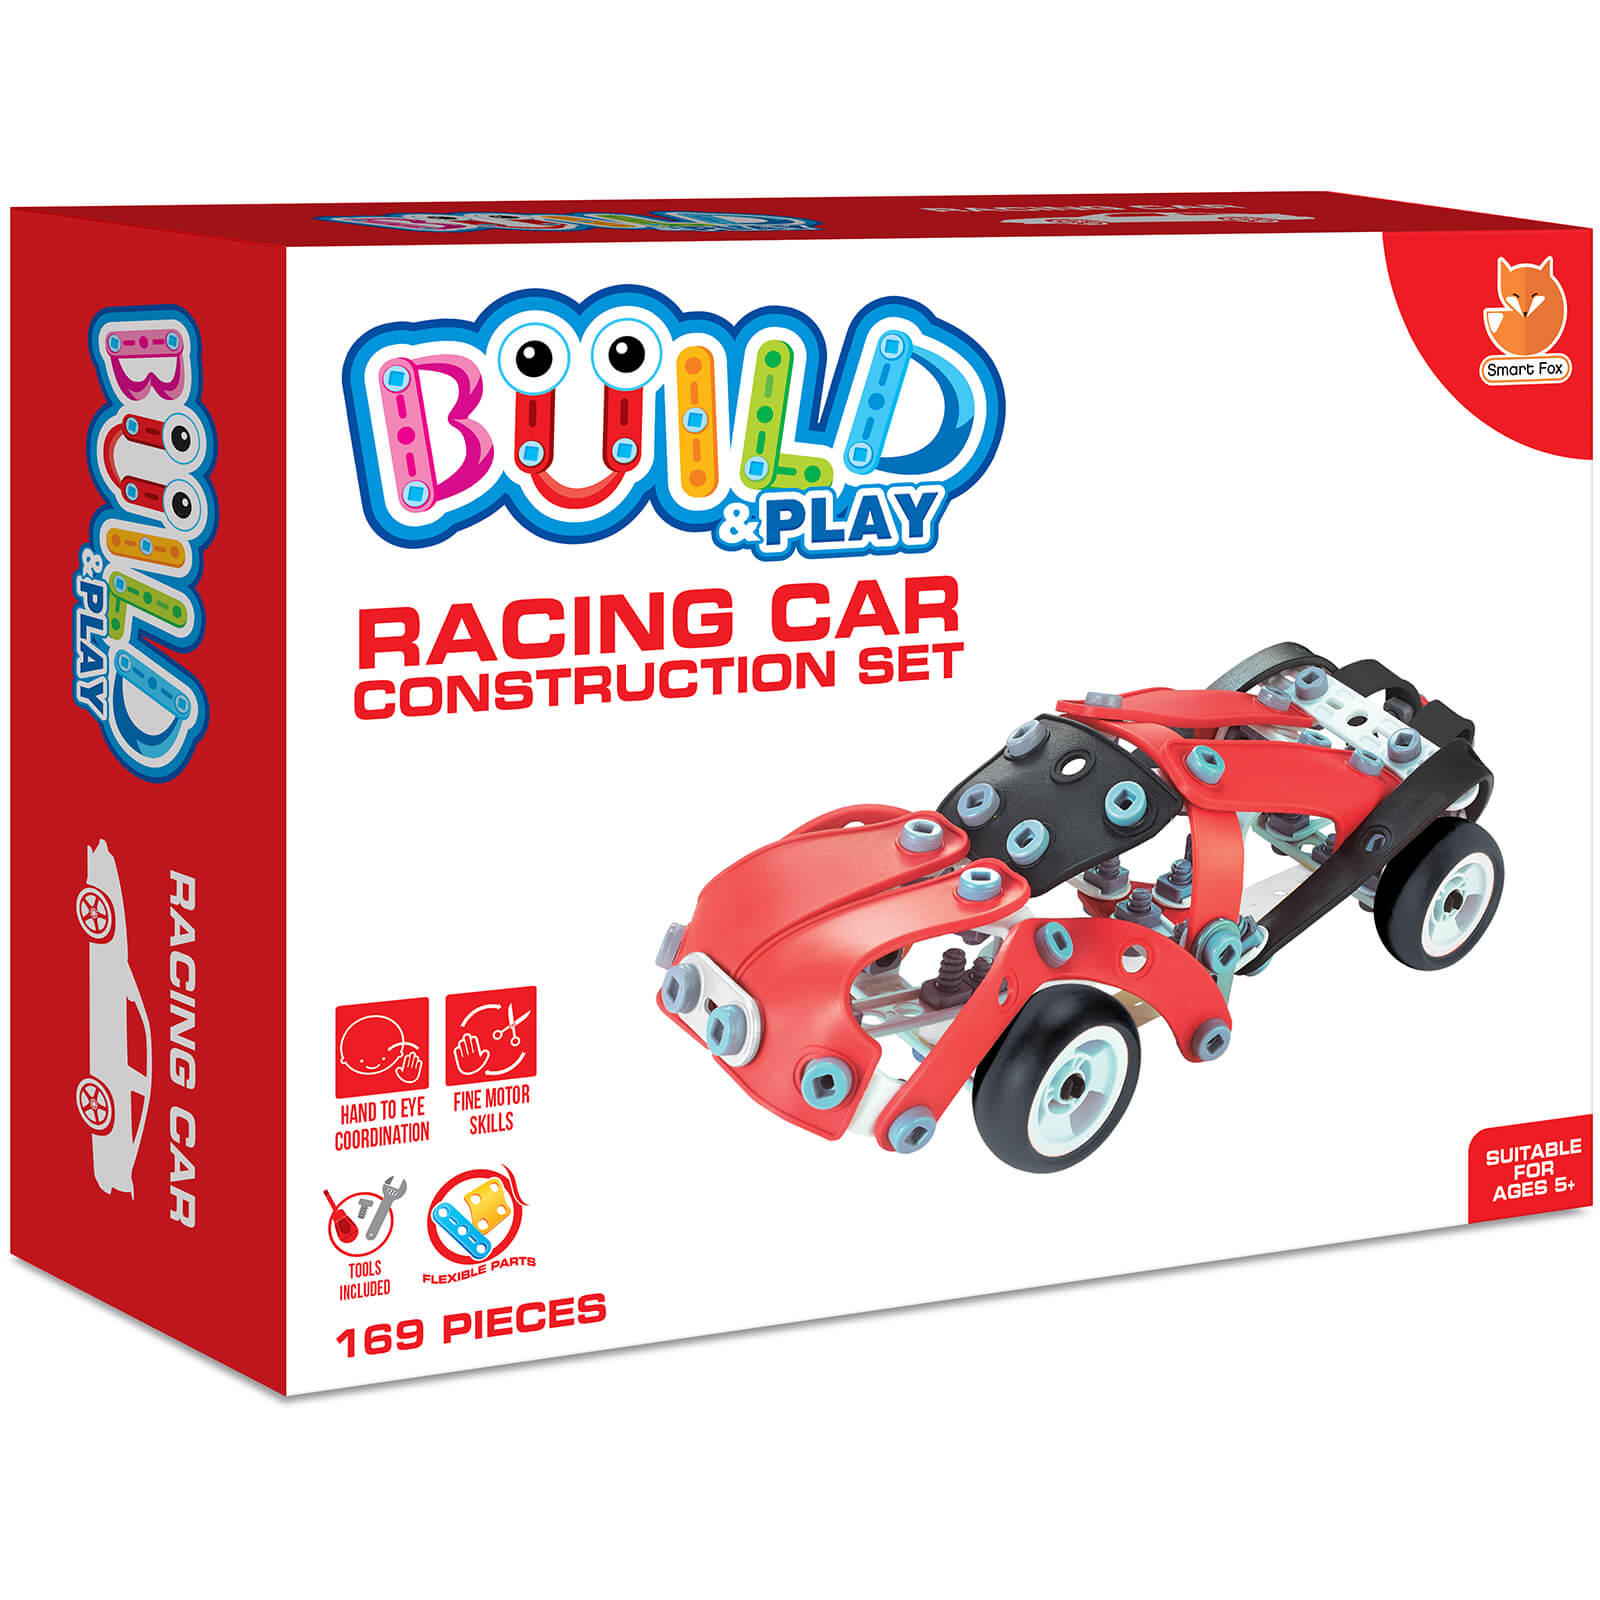 Racing Car Construction Set